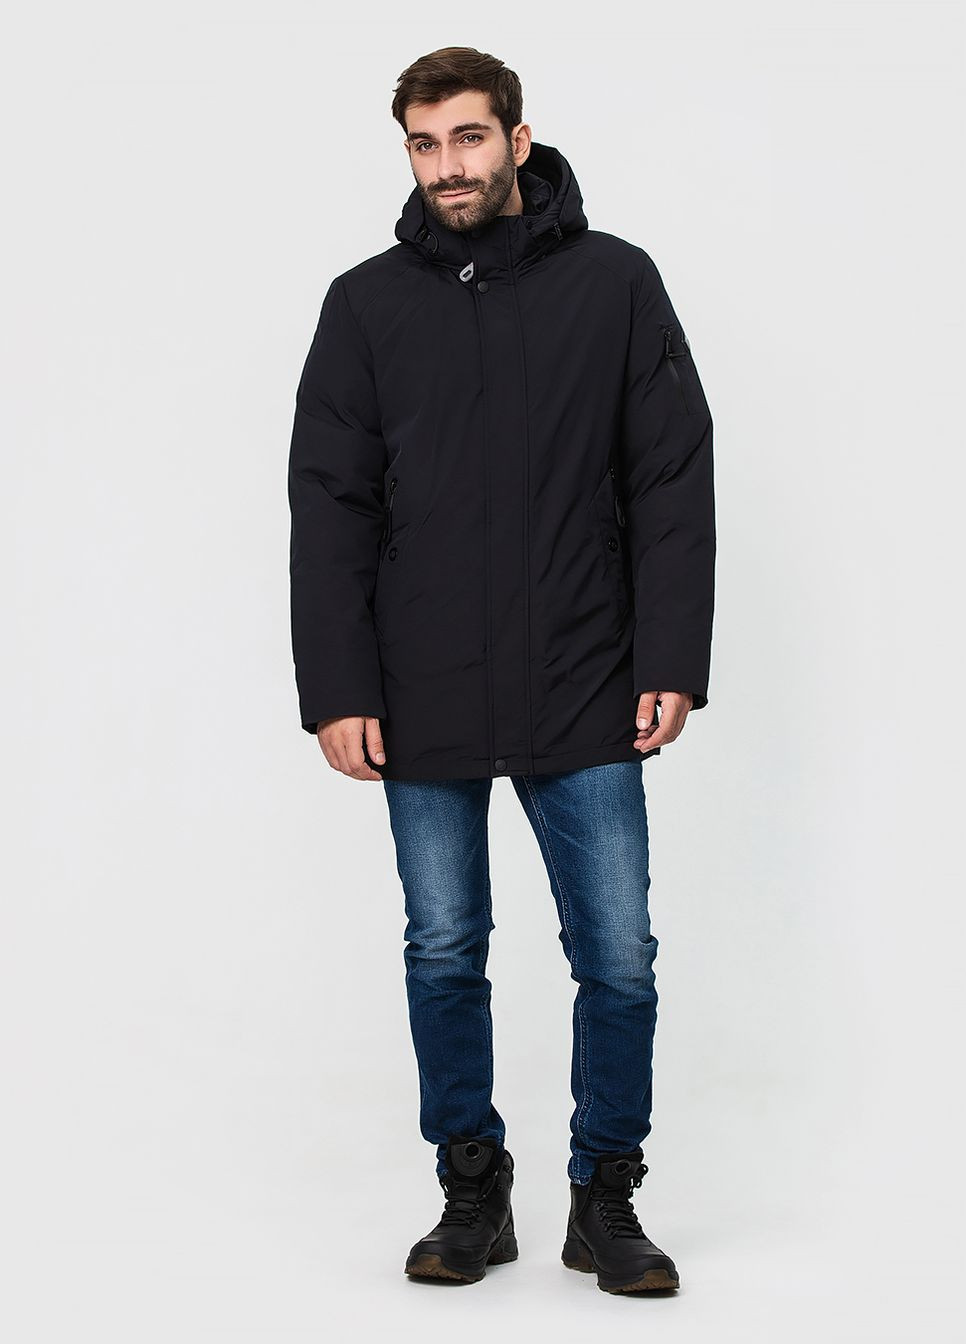 Чорна зимня зимова куртка з капюшоном модель ZPJV 1275